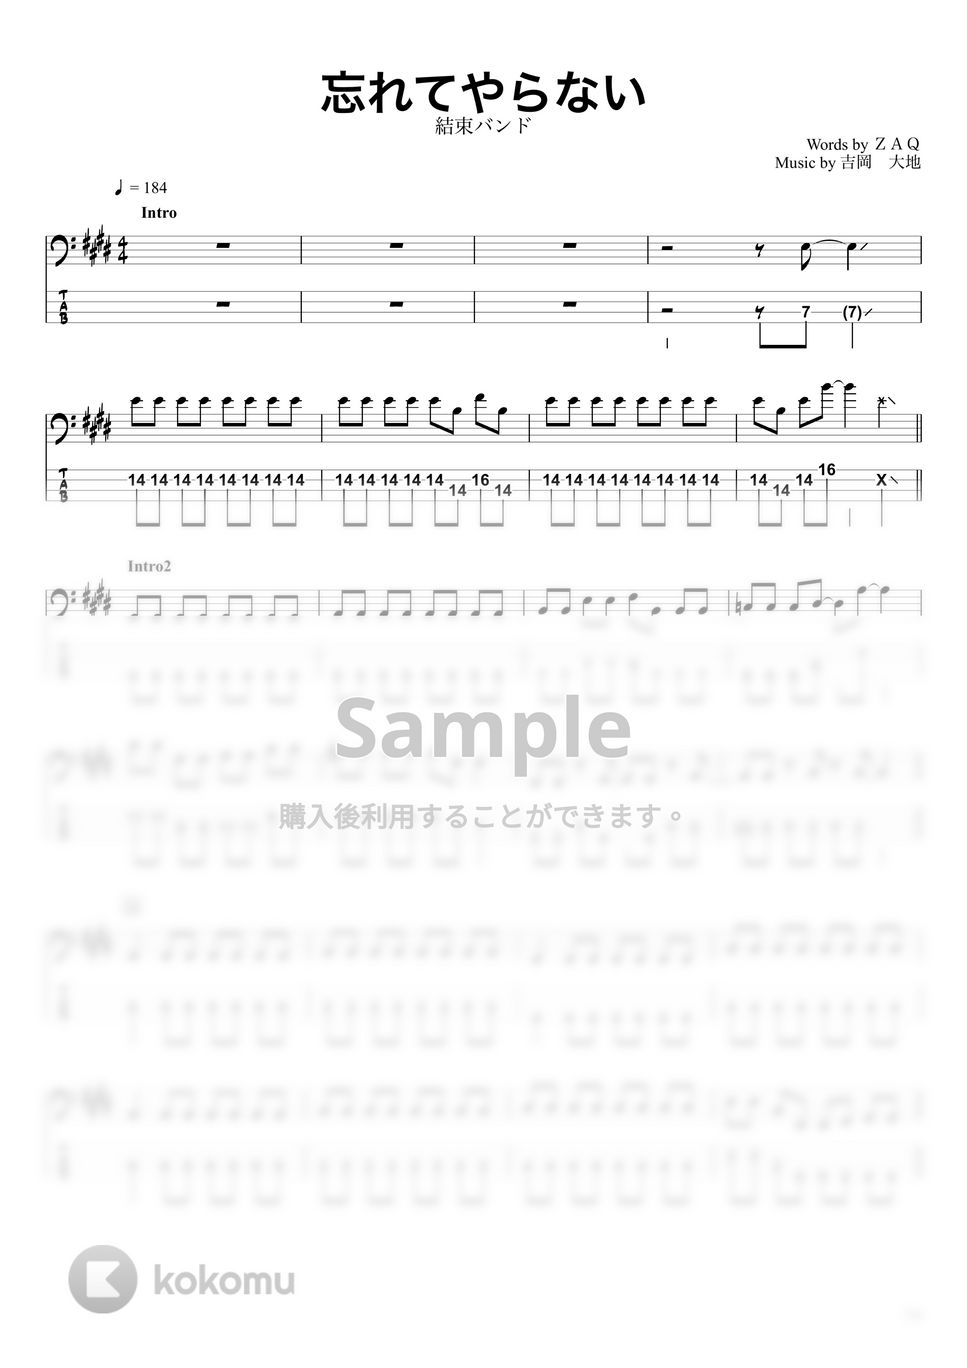 結束バンド - 忘れてやらない (ベースTAB譜☆4弦ベース対応) by swbass